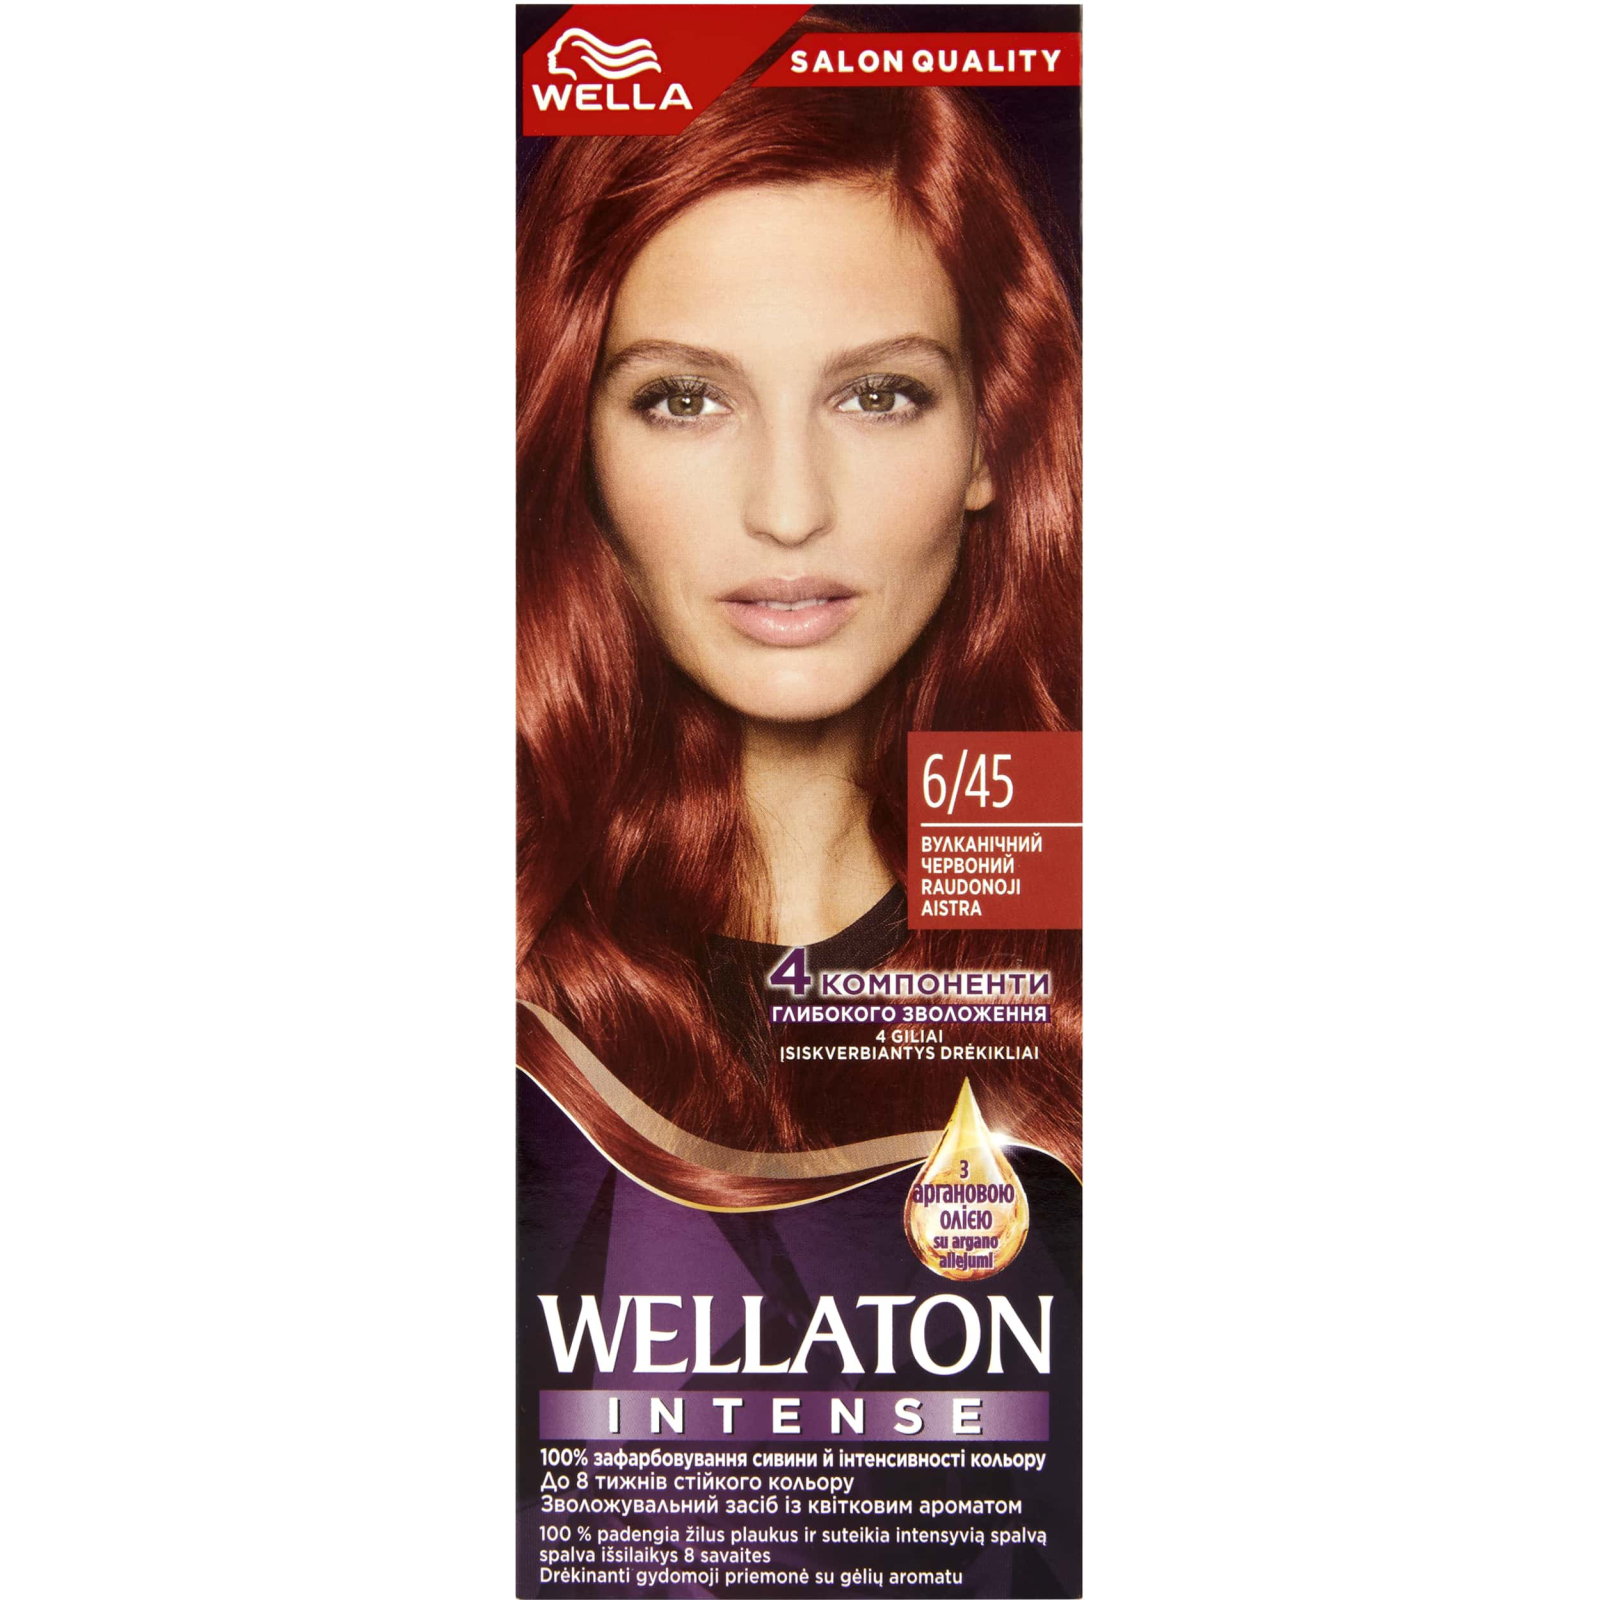 Краска для волос Wellaton 7/0 Осенние листья (4056800023127/4056800756858)